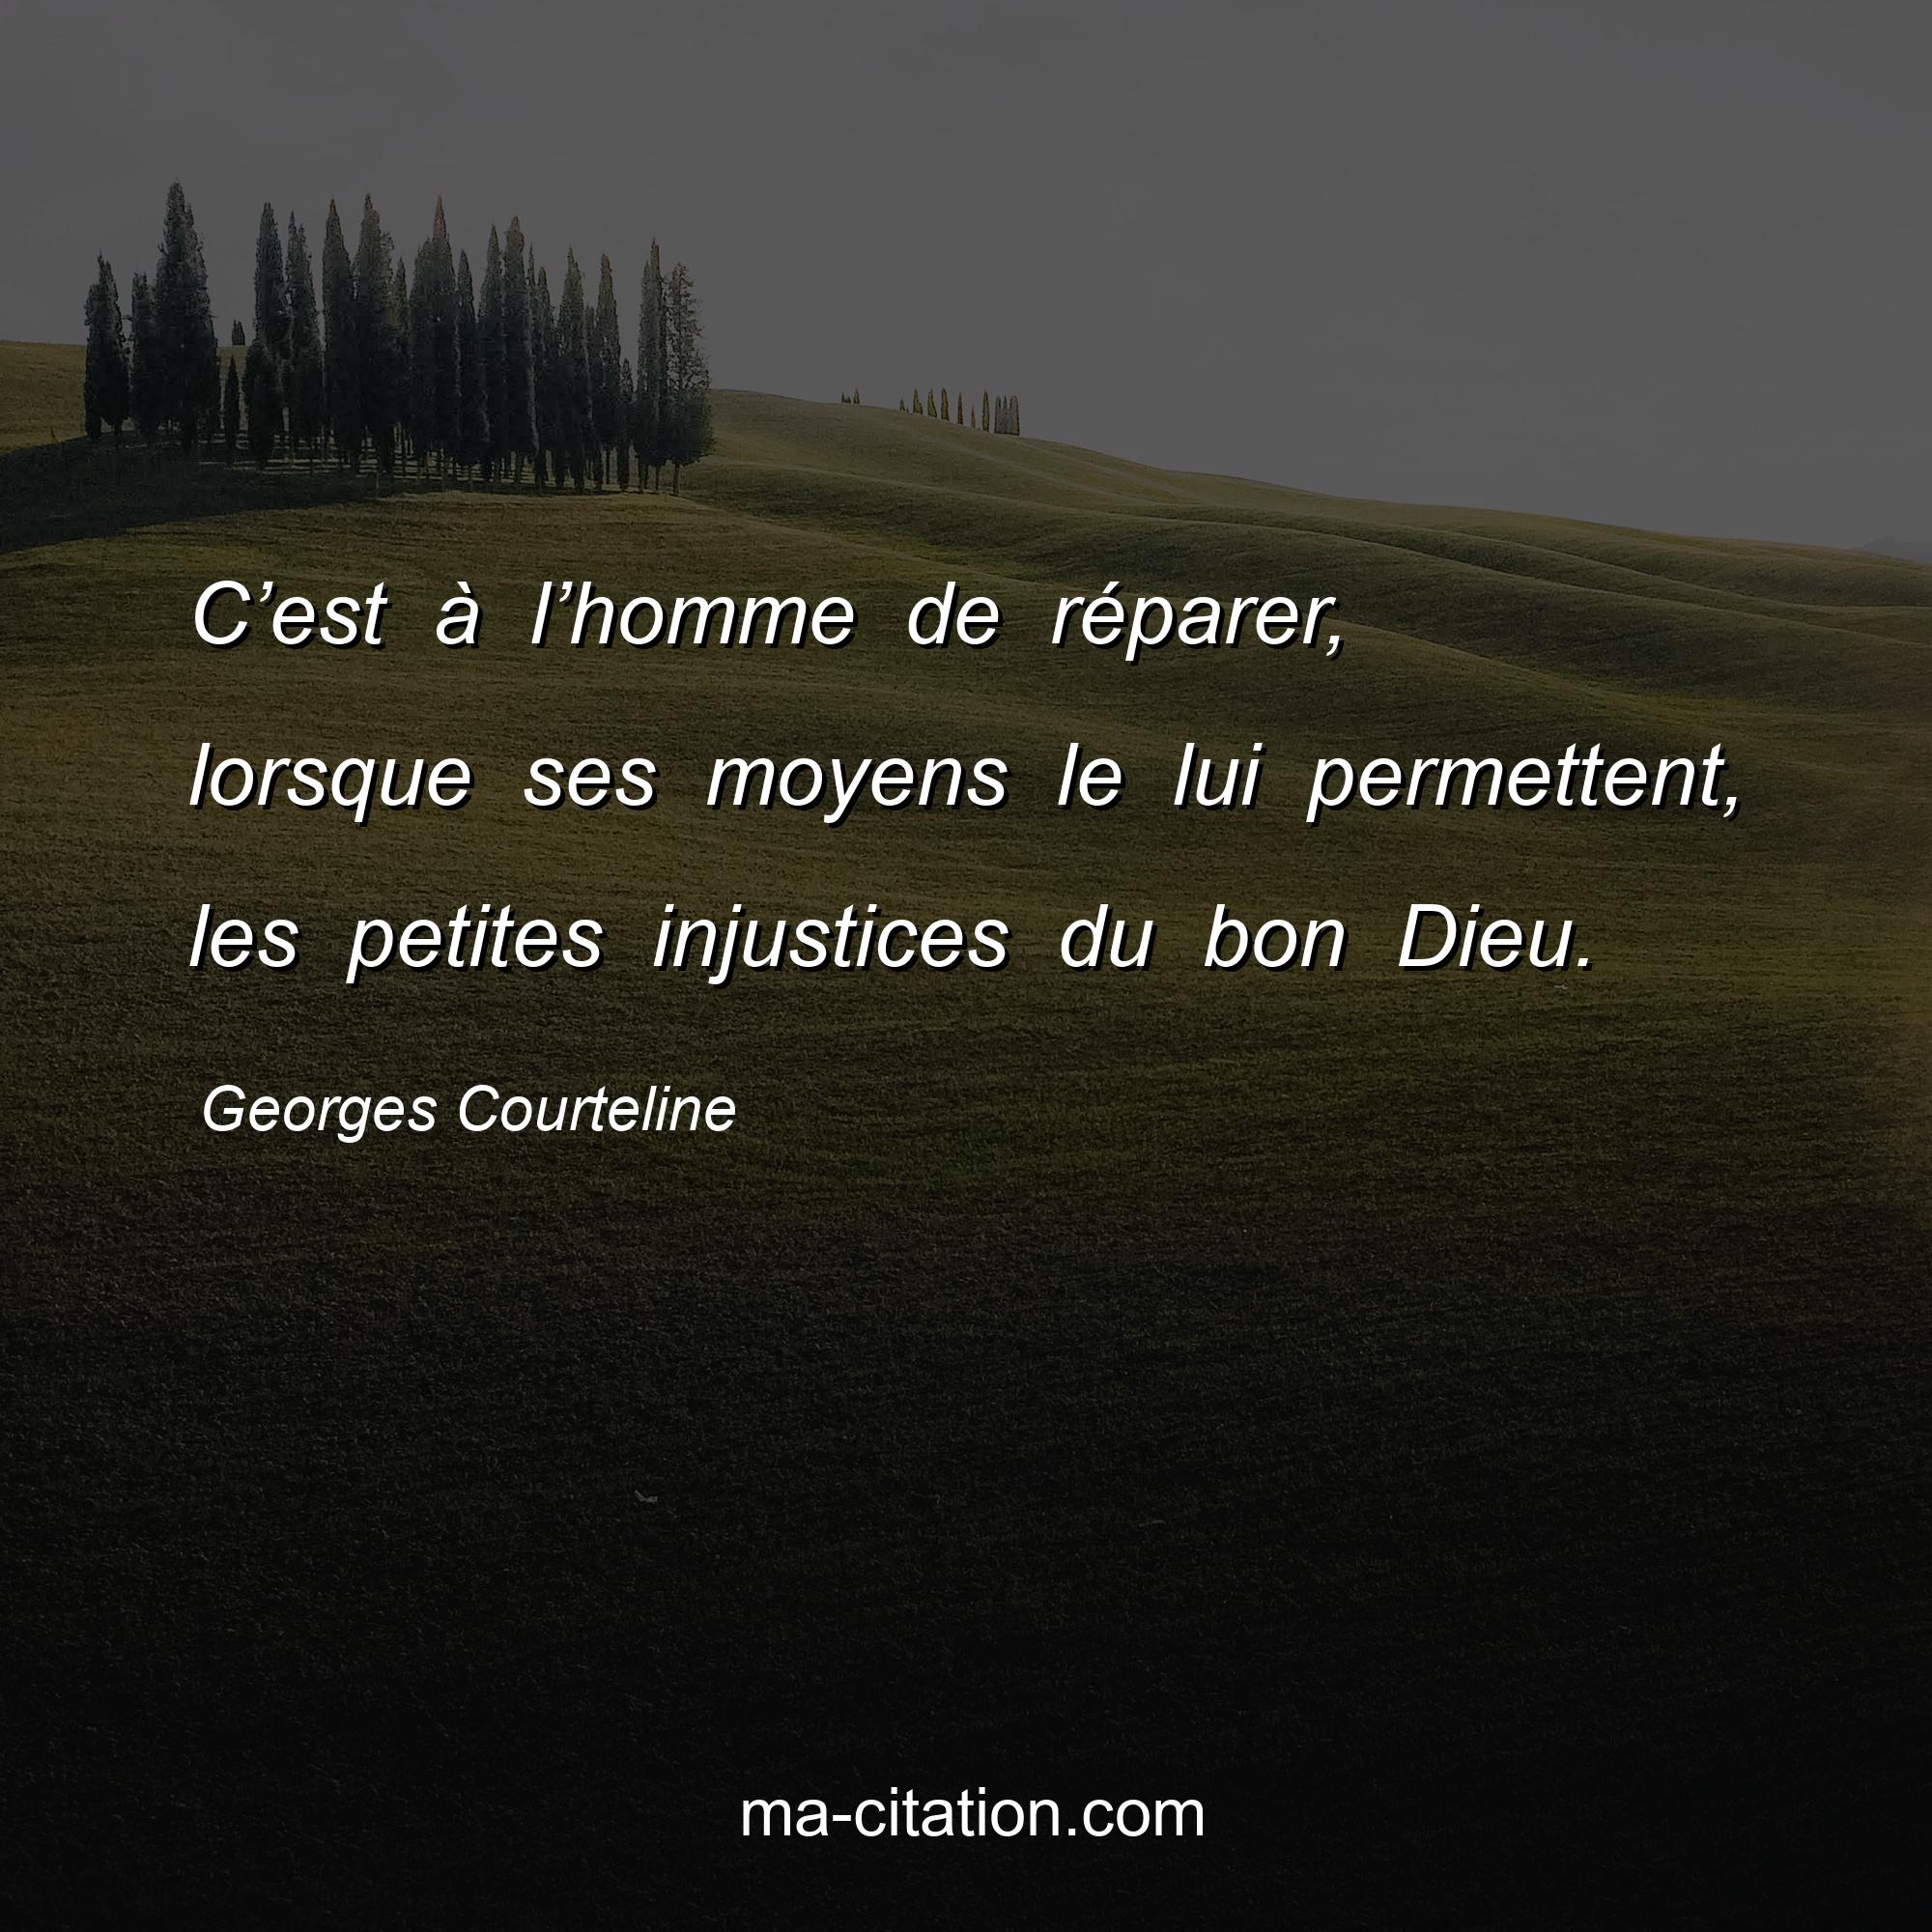 Georges Courteline : C’est à l’homme de réparer, lorsque ses moyens le lui permettent, les petites injustices du bon Dieu.